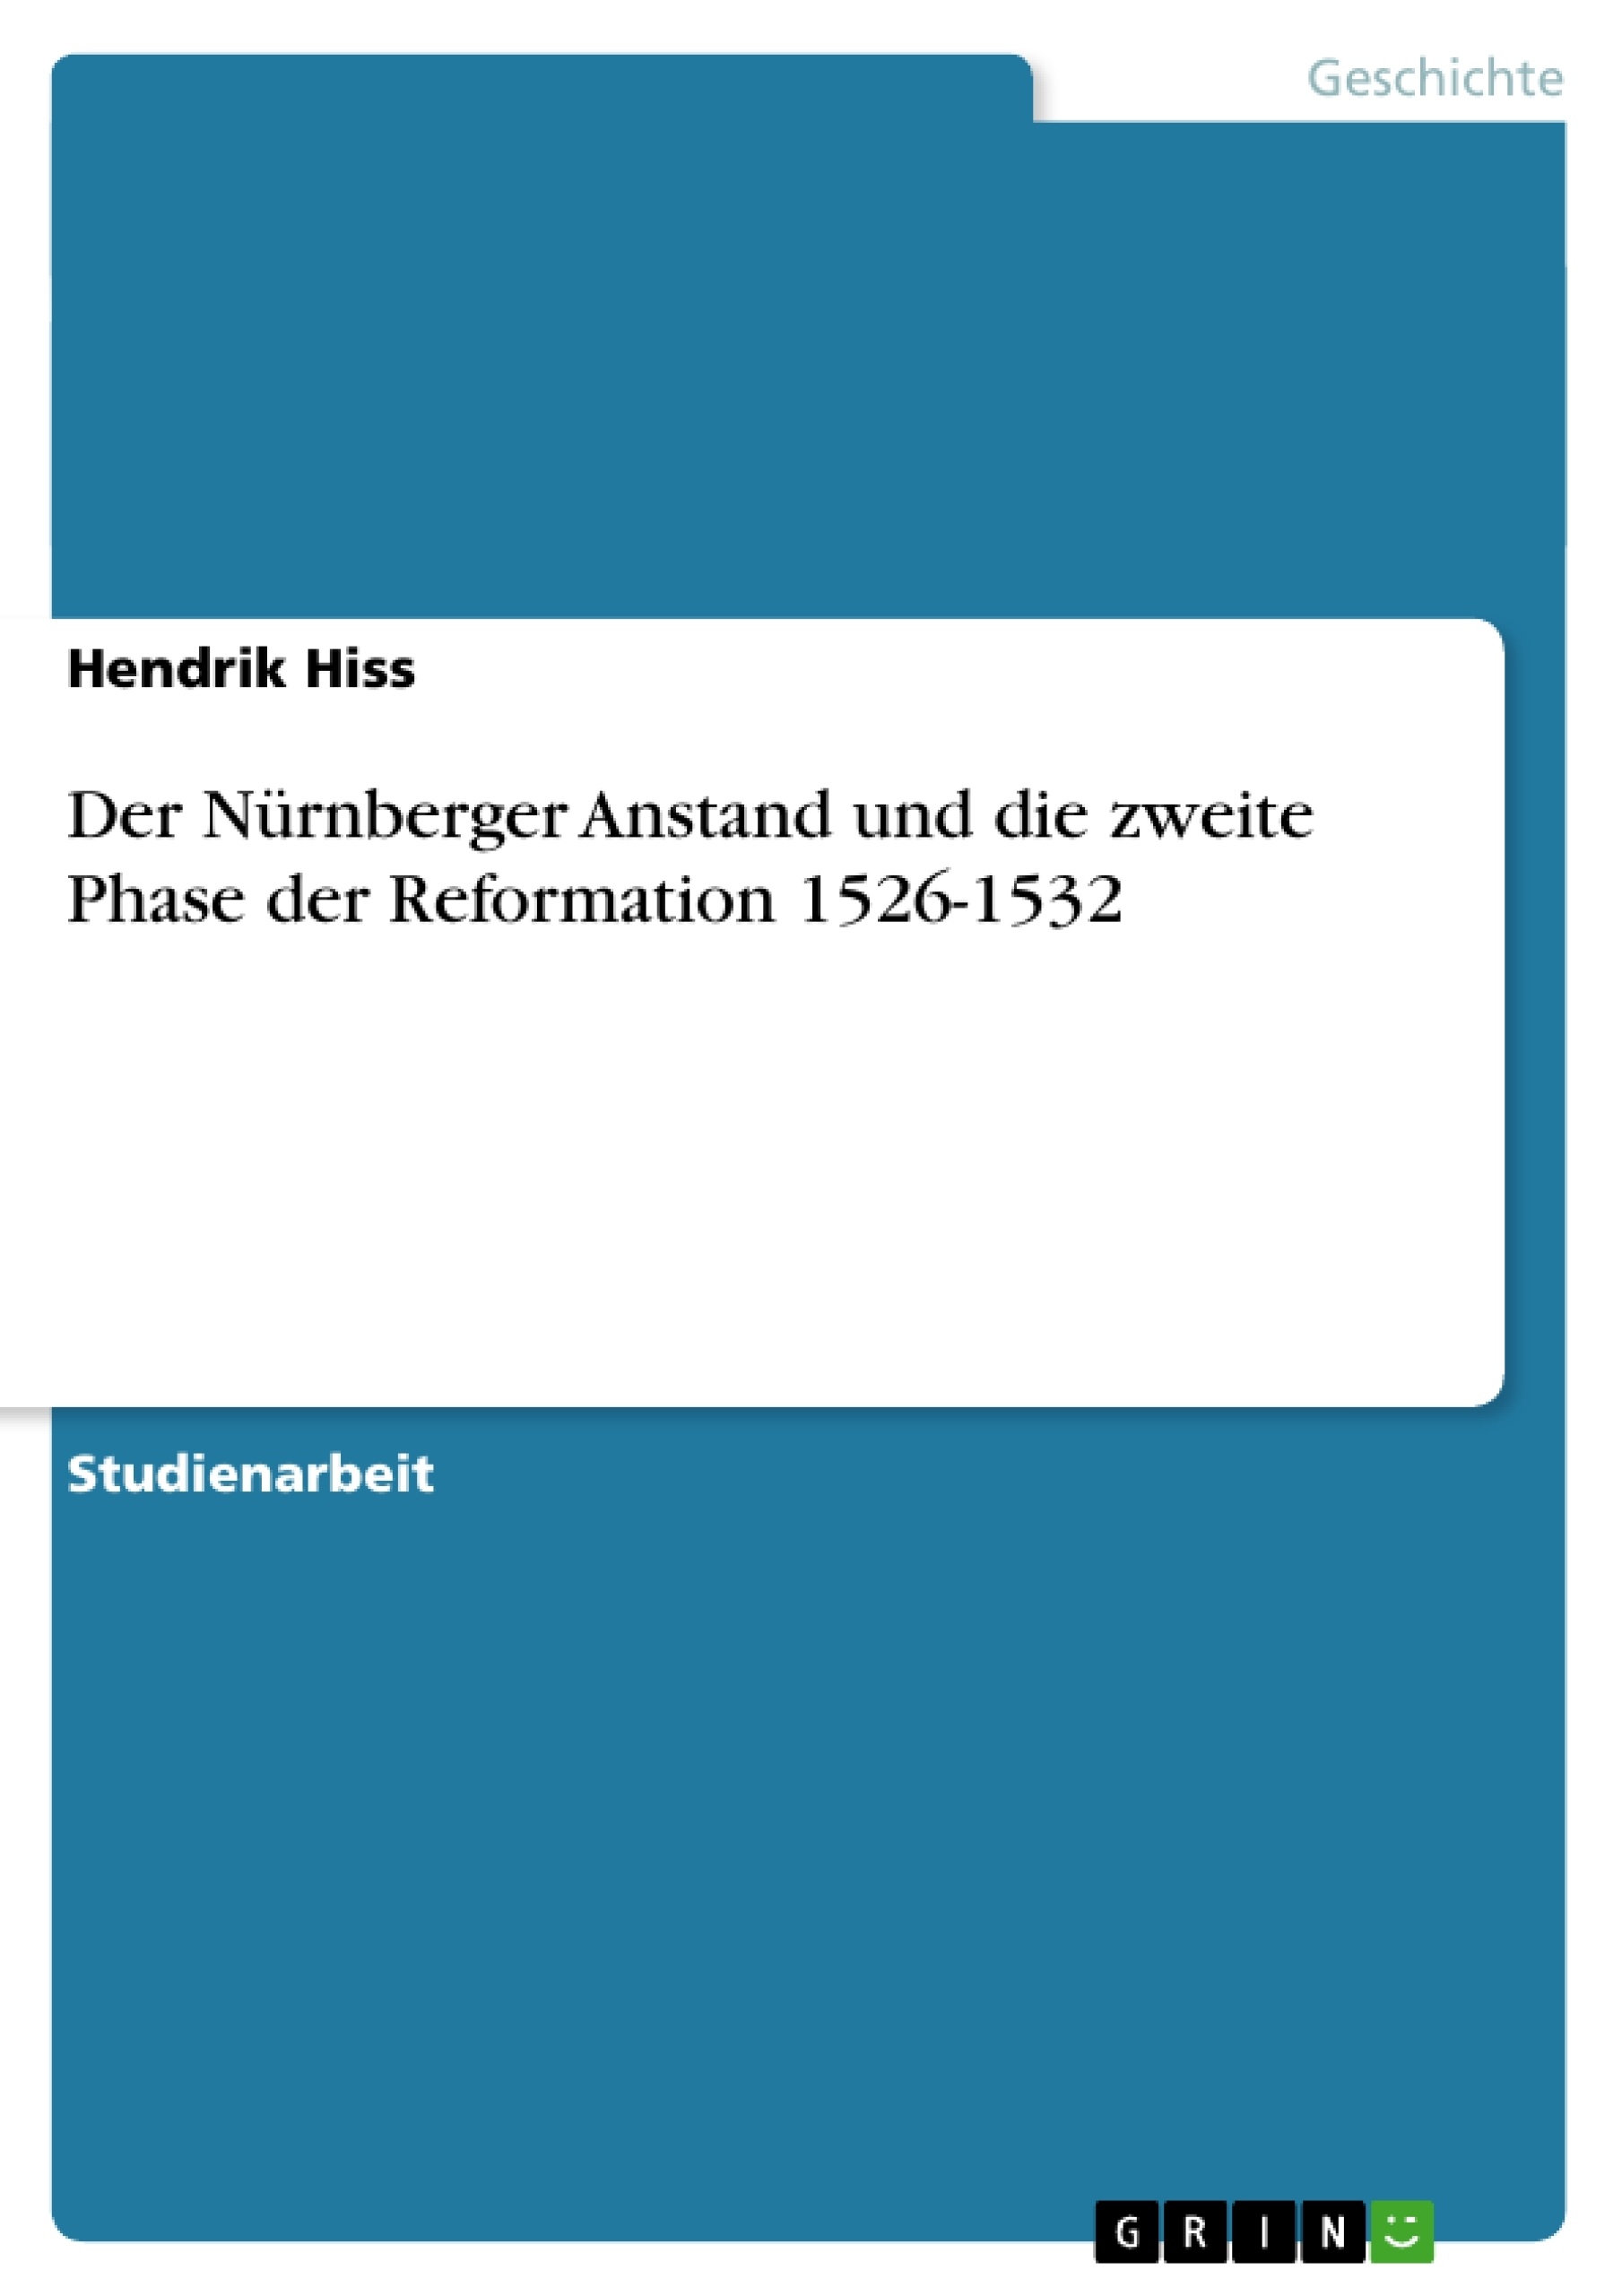 Título:  Der Nürnberger Anstand und die zweite Phase der Reformation 1526-1532